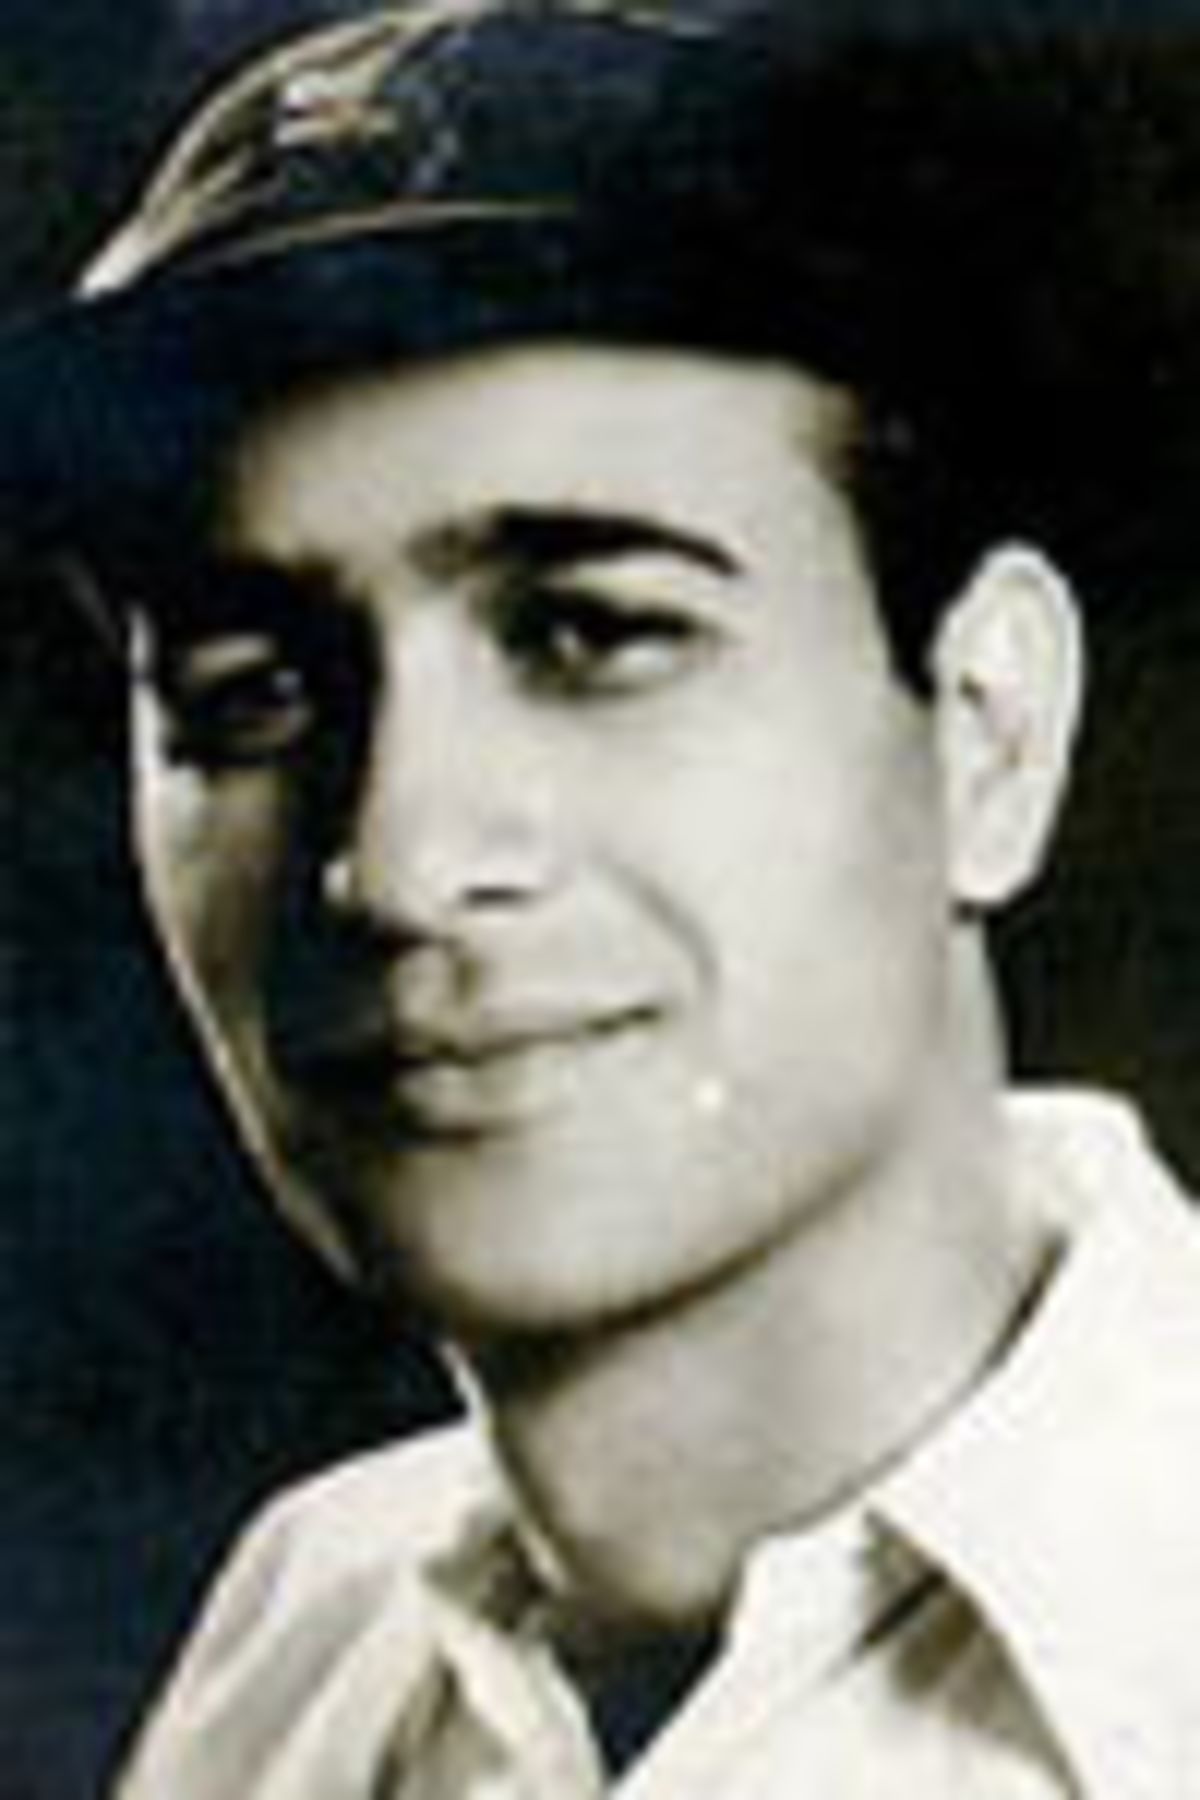 Mohammed Ghazali